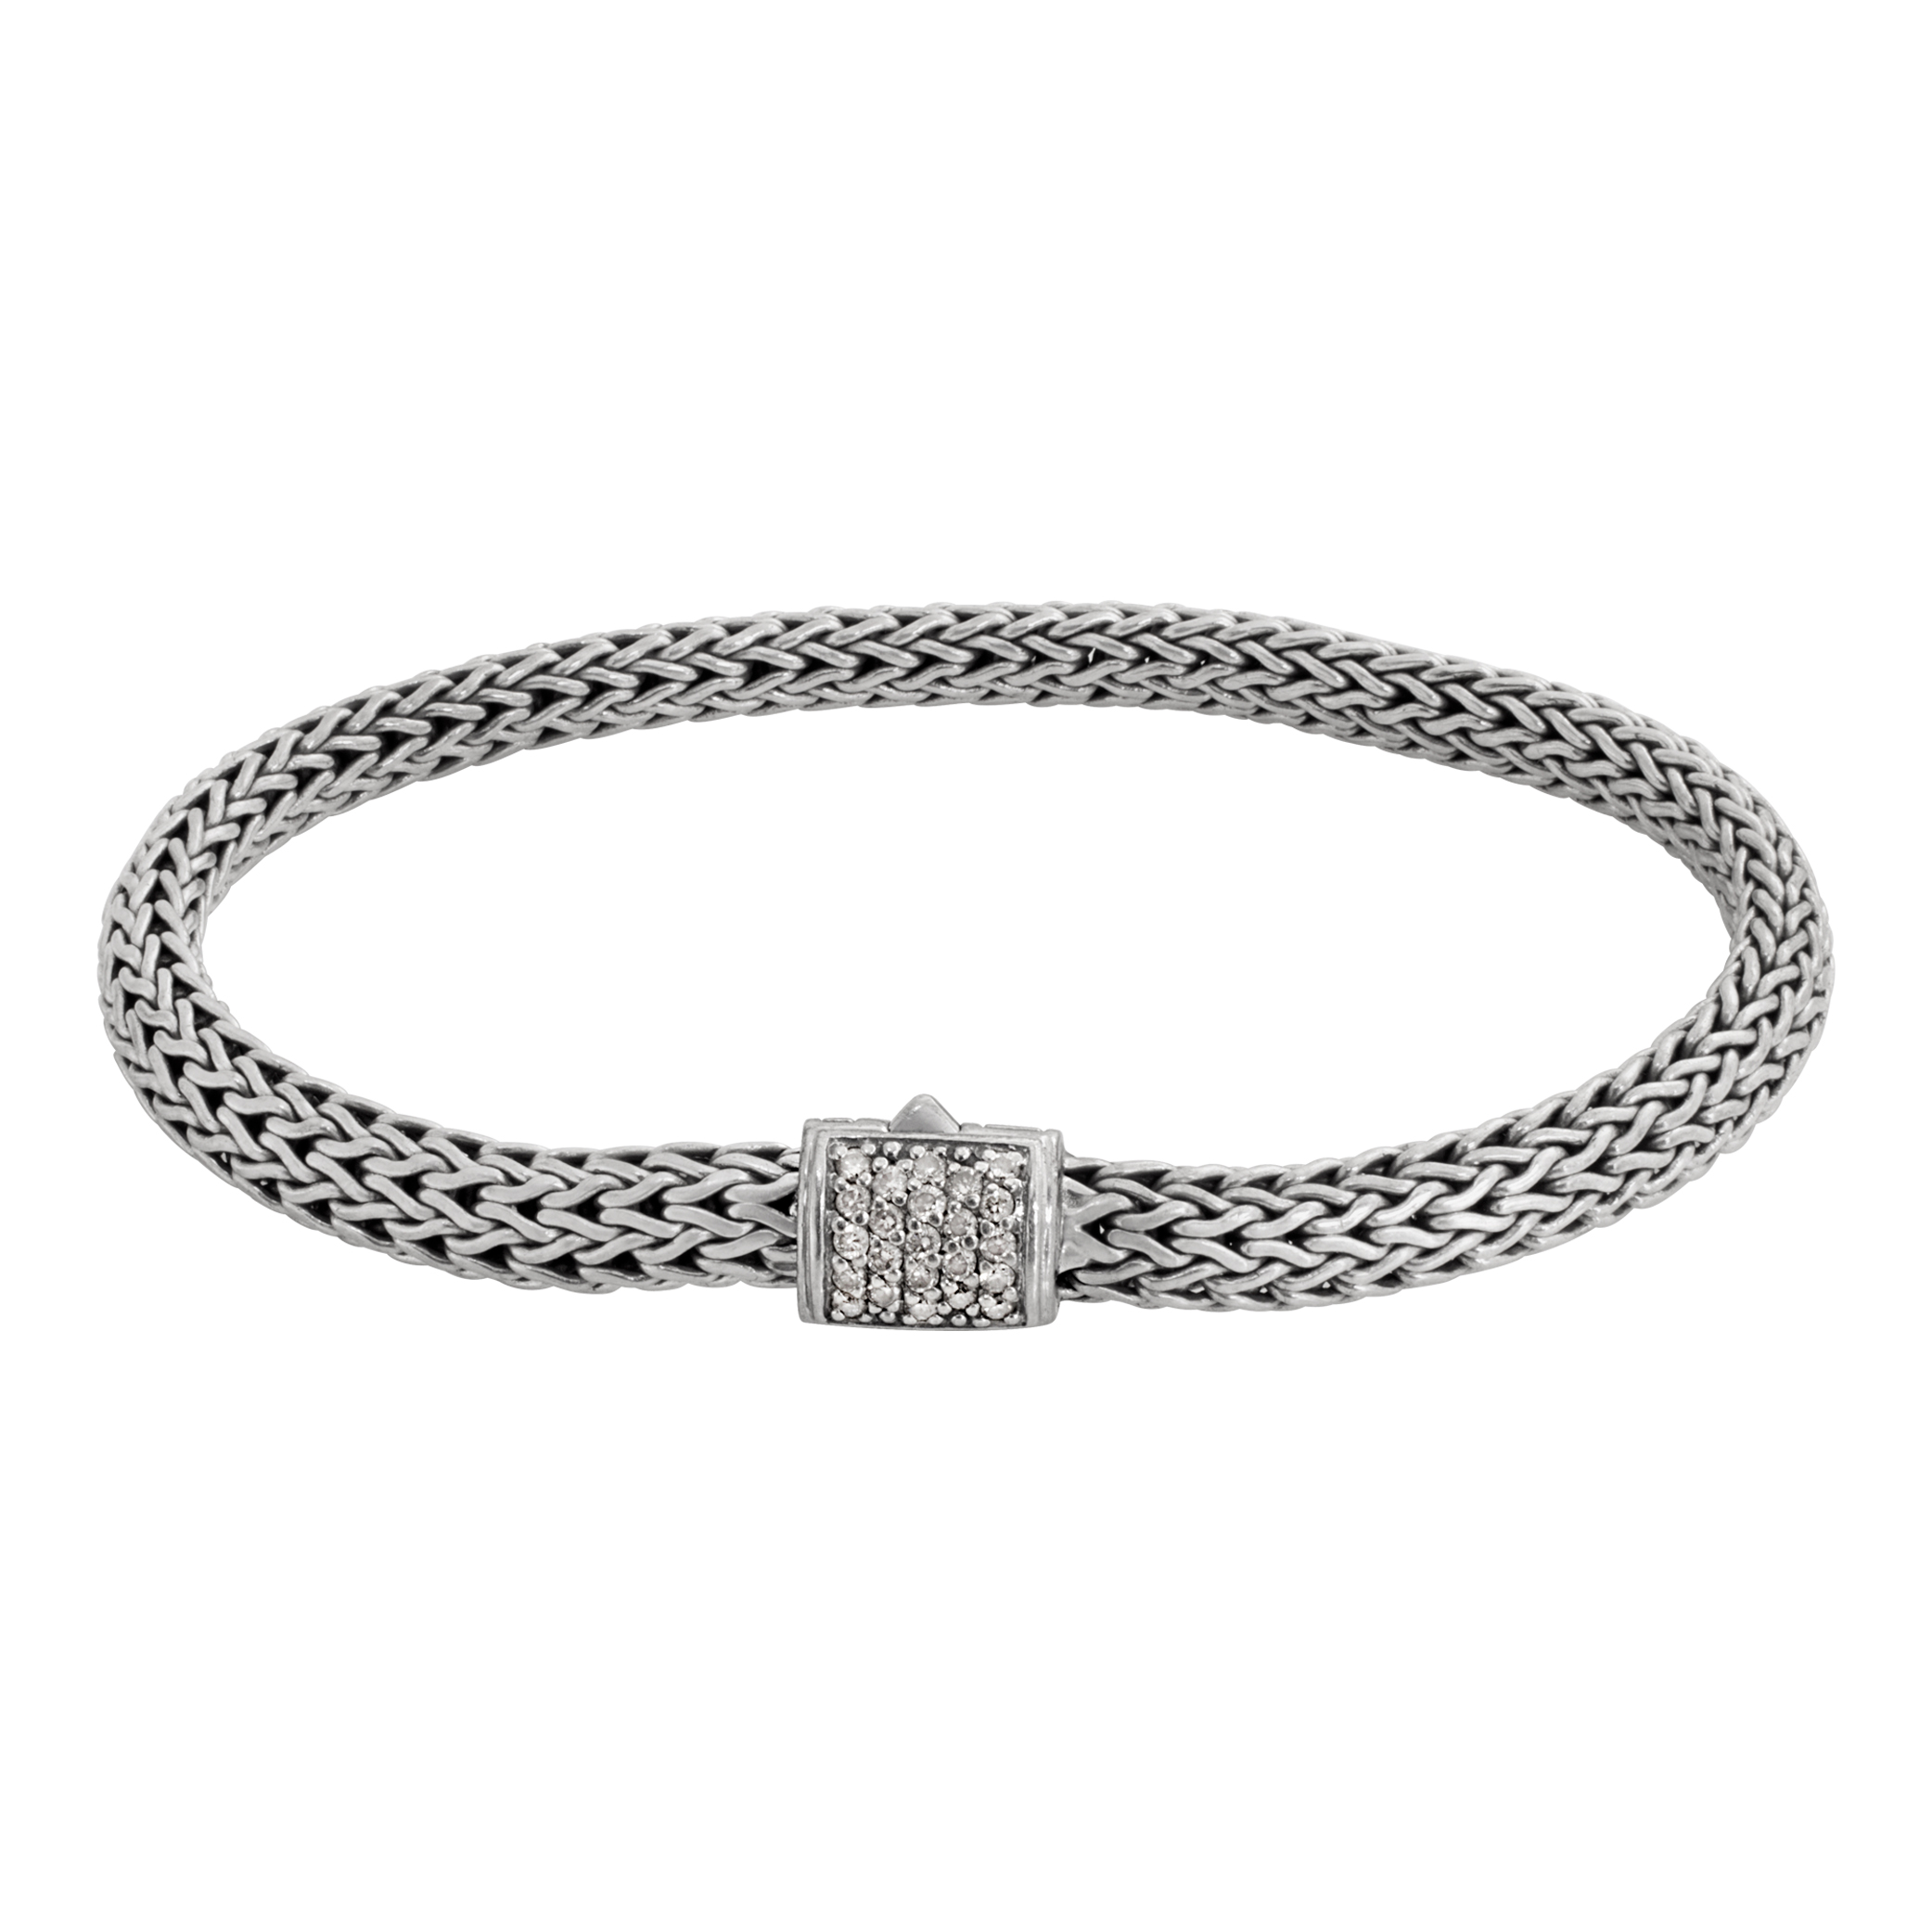 John Hardy diamond bracelet in sterling silver (Stones)